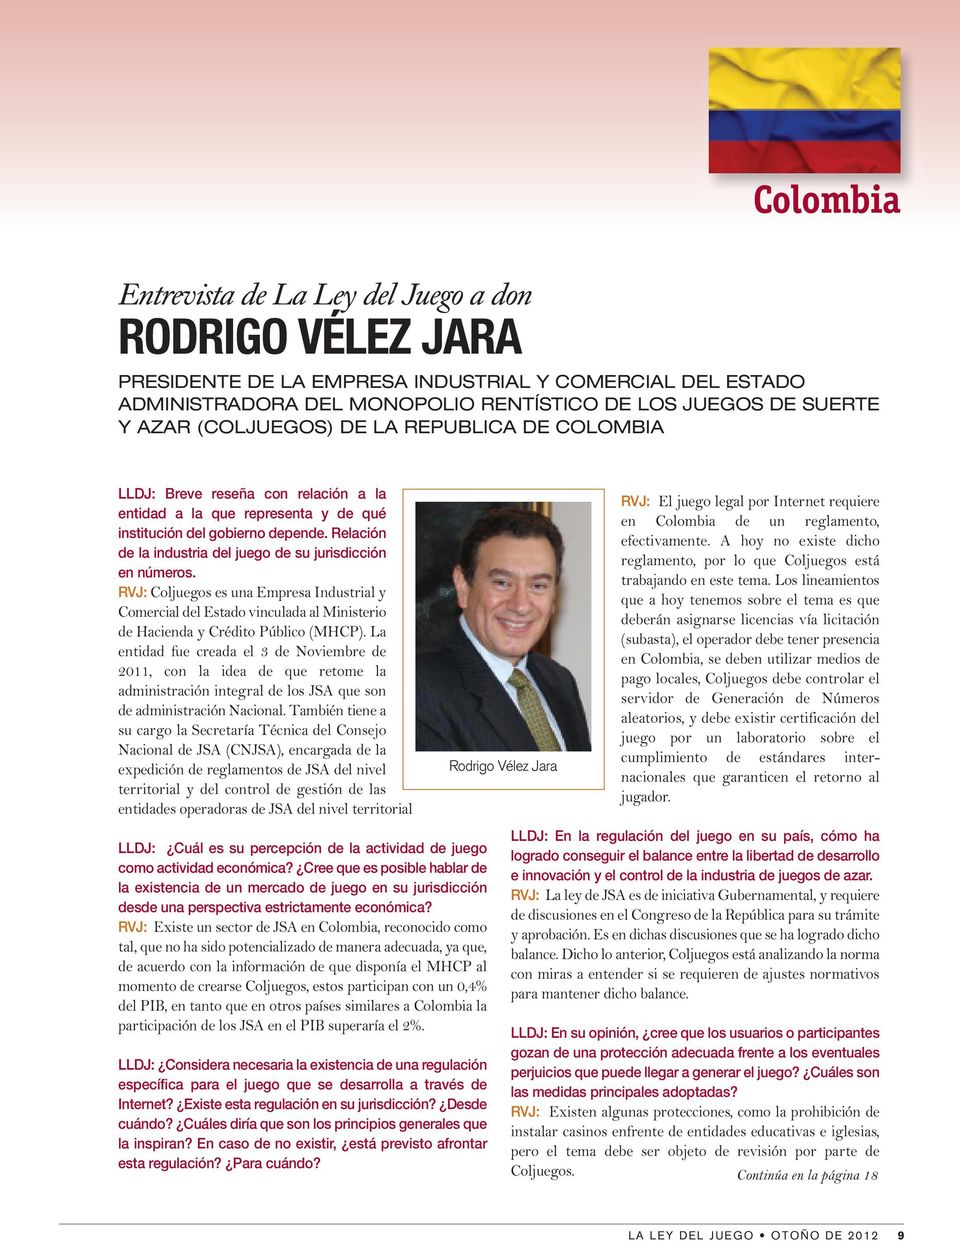 Relación de la industria del juego de su jurisdicción en números. RVJ: Coljuegos es una Empresa Industrial y Comercial del Estado vinculada al Ministerio de Hacienda y Crédito Público (MHCP).